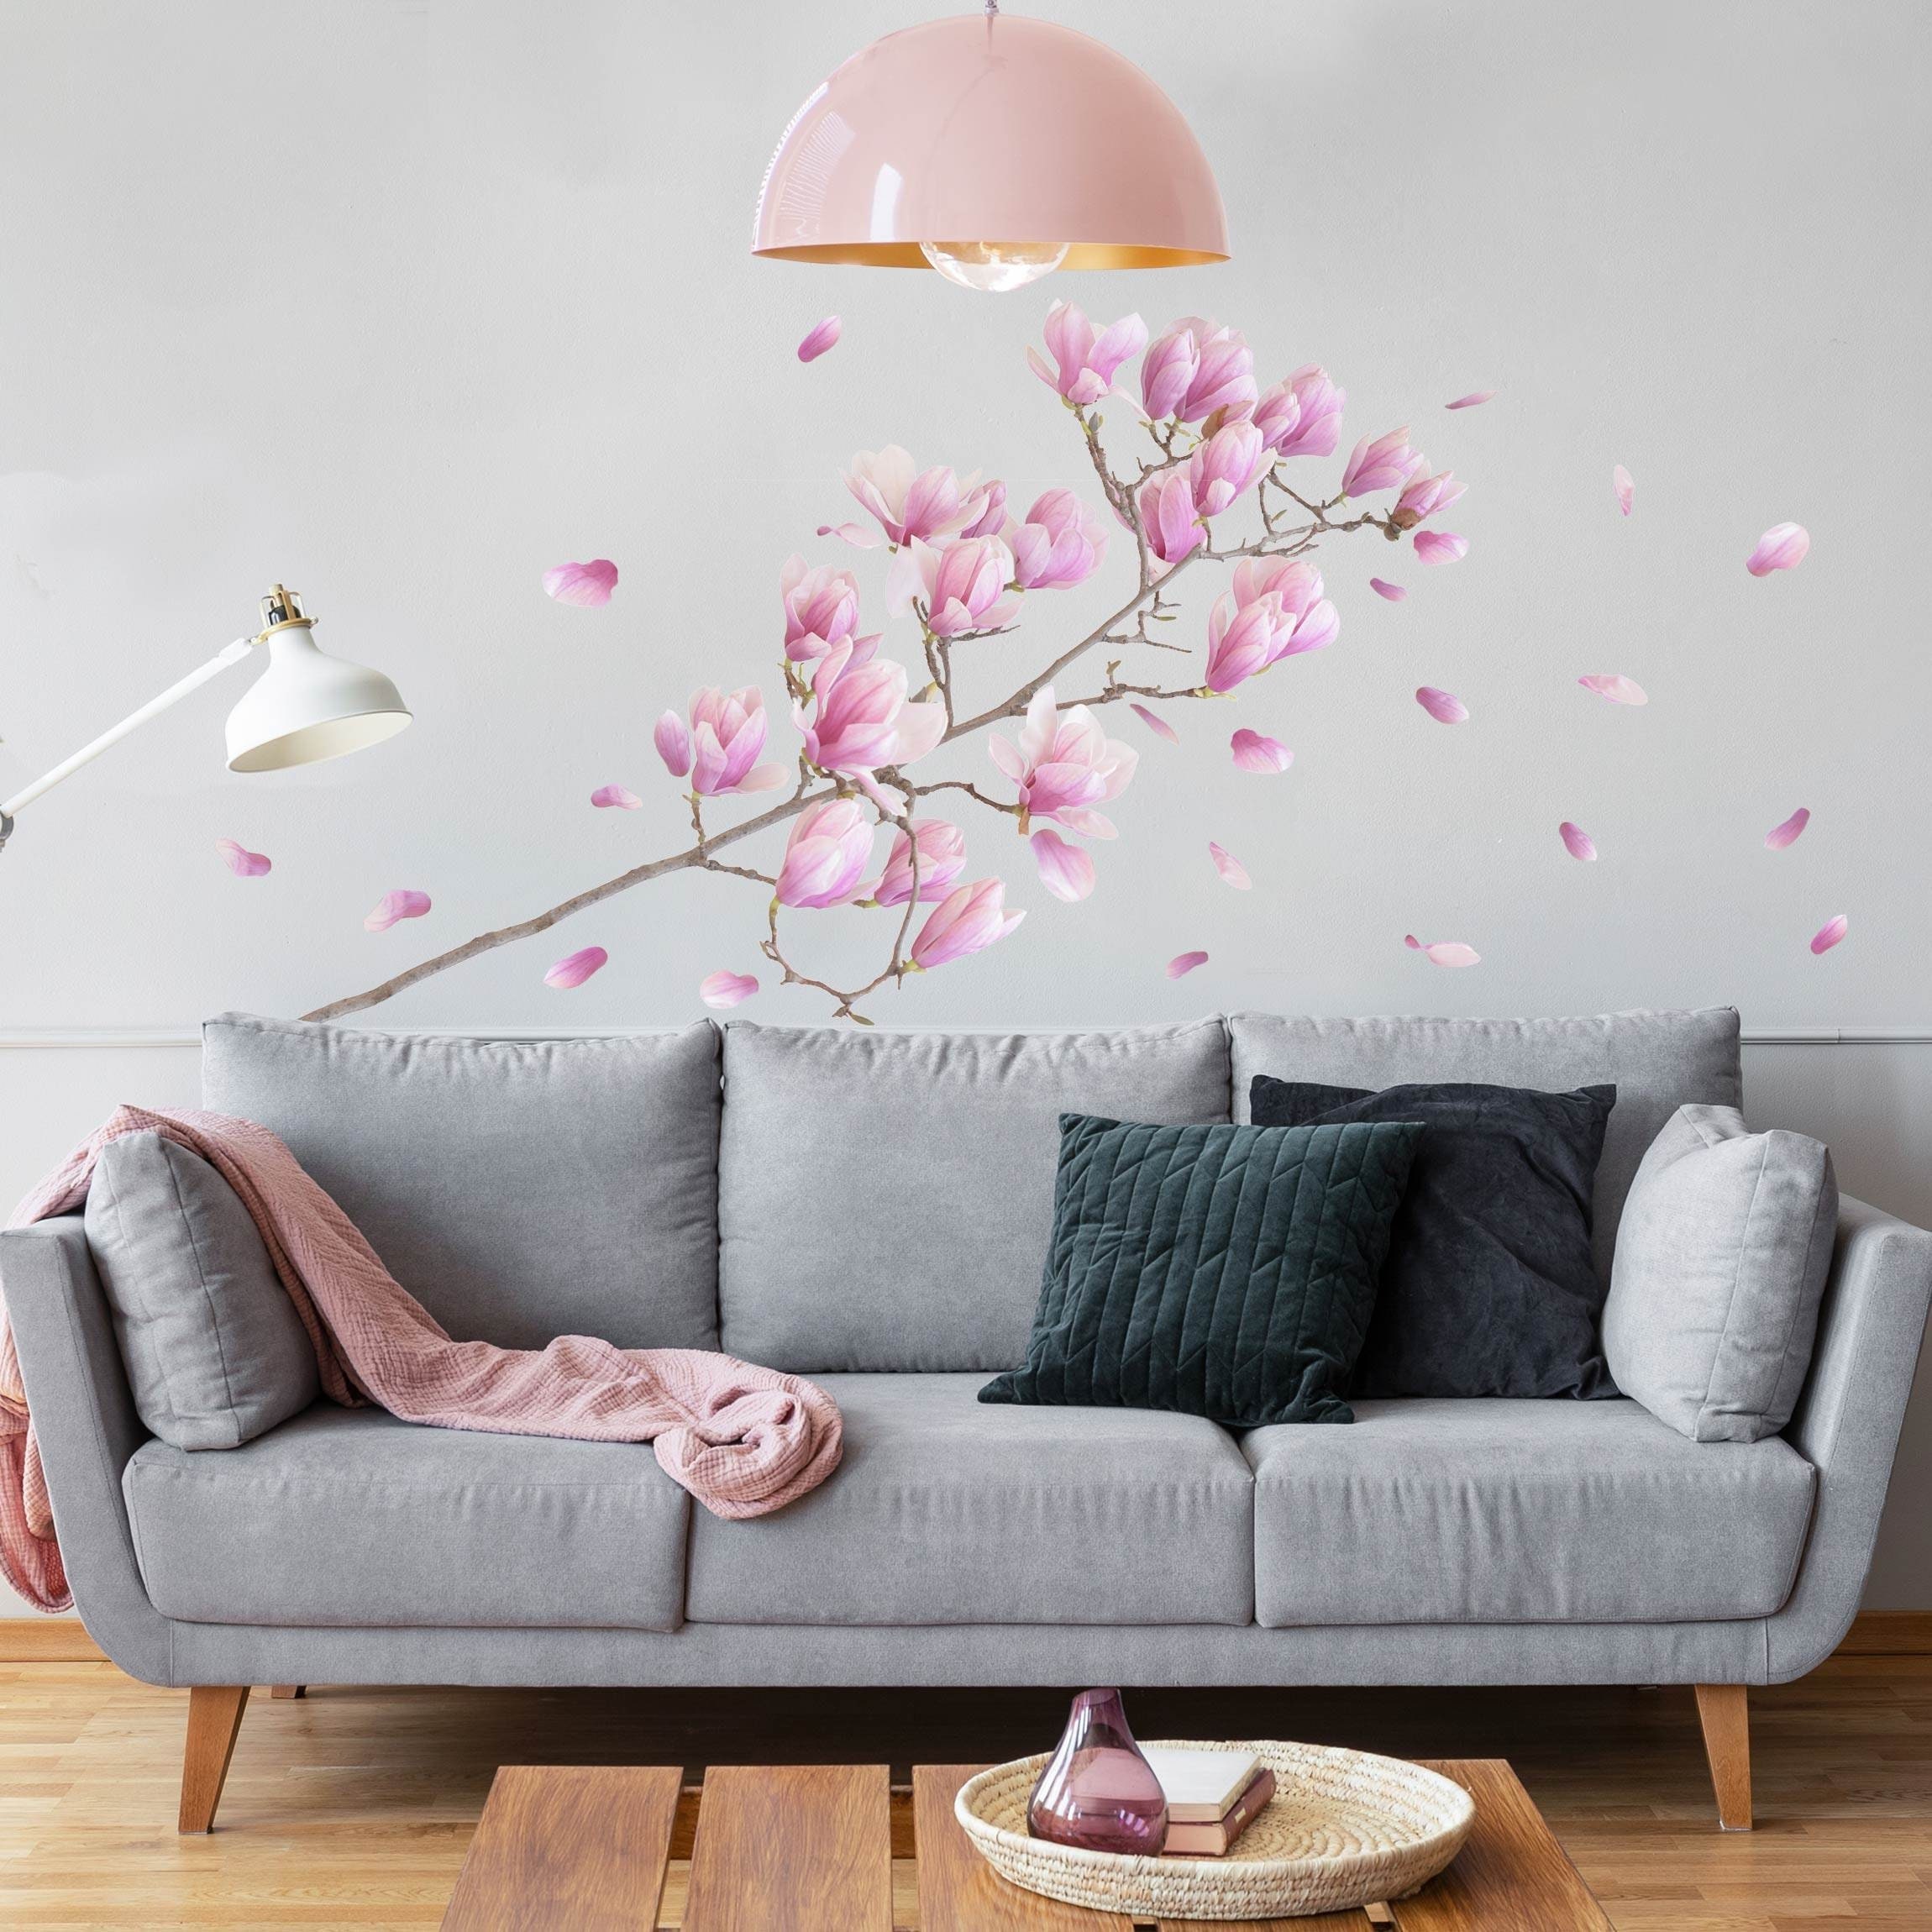 Vinilo dormitorio magnolia para pared - TenVinilo